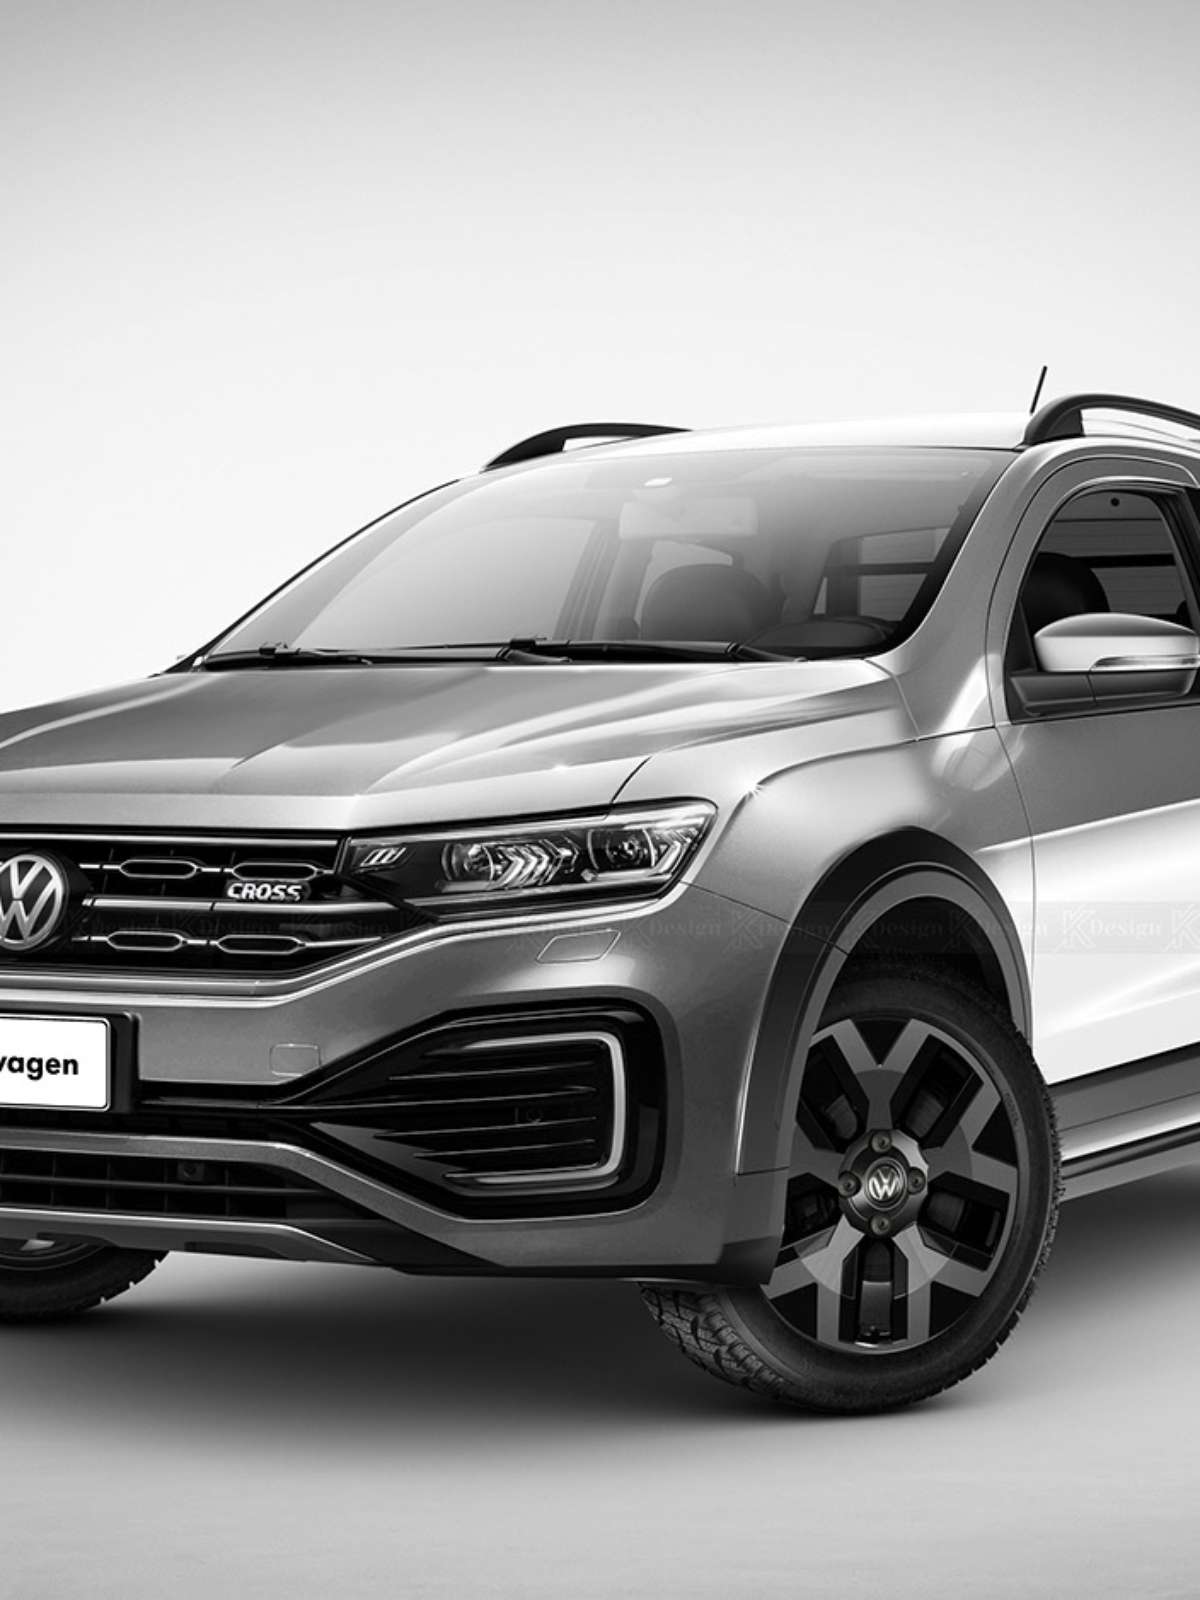 VW Saveiro chega com novo design e melhor custo-benefício do mercado